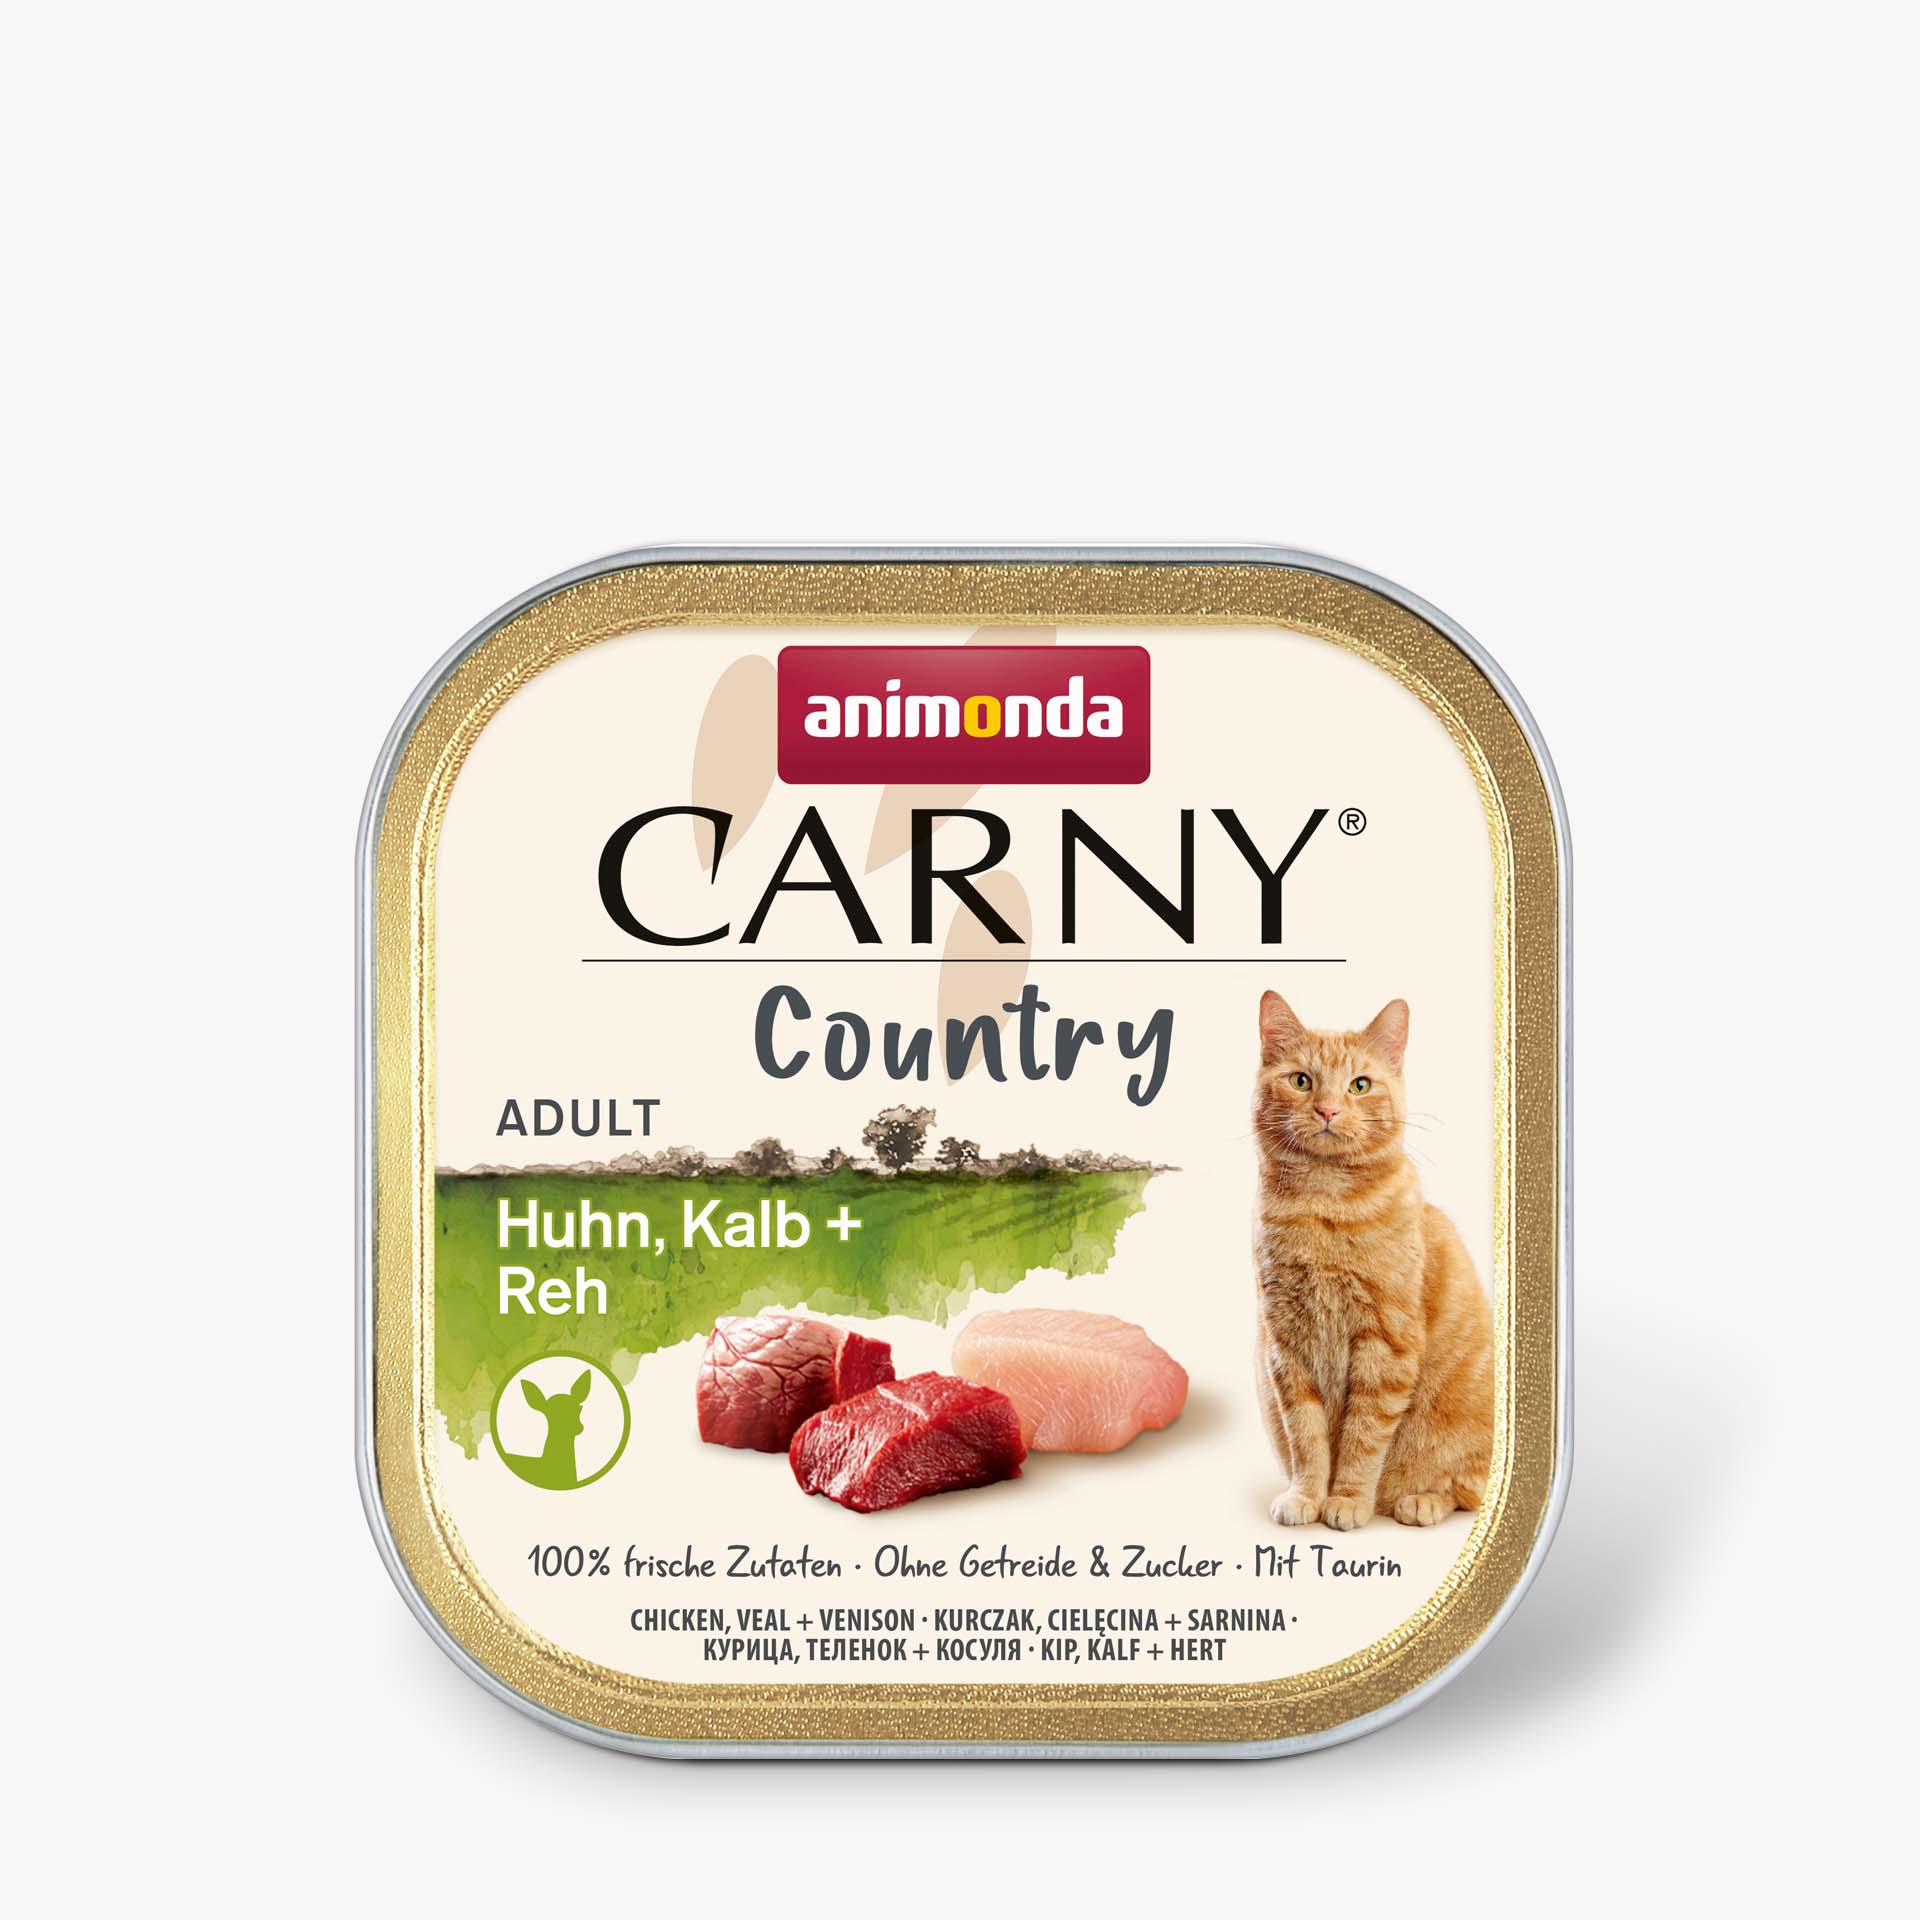 Carny Adult Country Huhn, Kalb + Reh